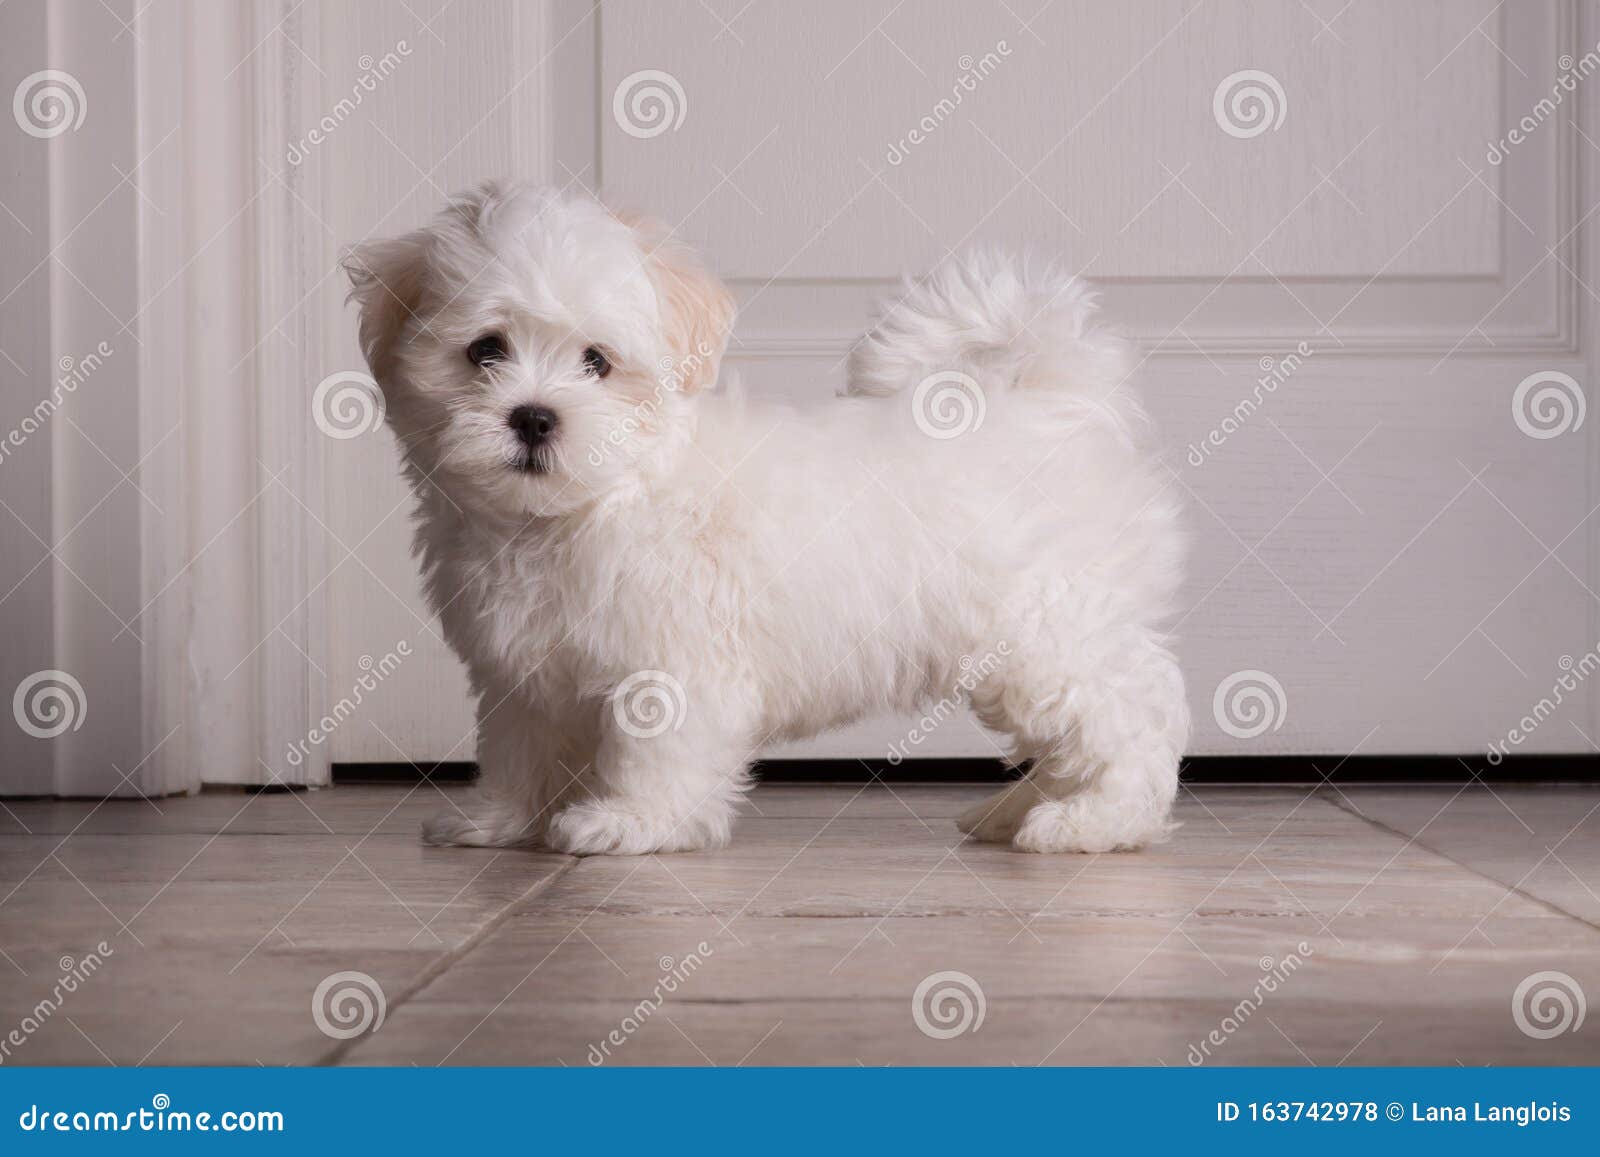 36 Best Images Images Of Newborn Shih Tzu Puppies - Shih Tzu Puppies Stock Image Image Of Outside Animal 156043313